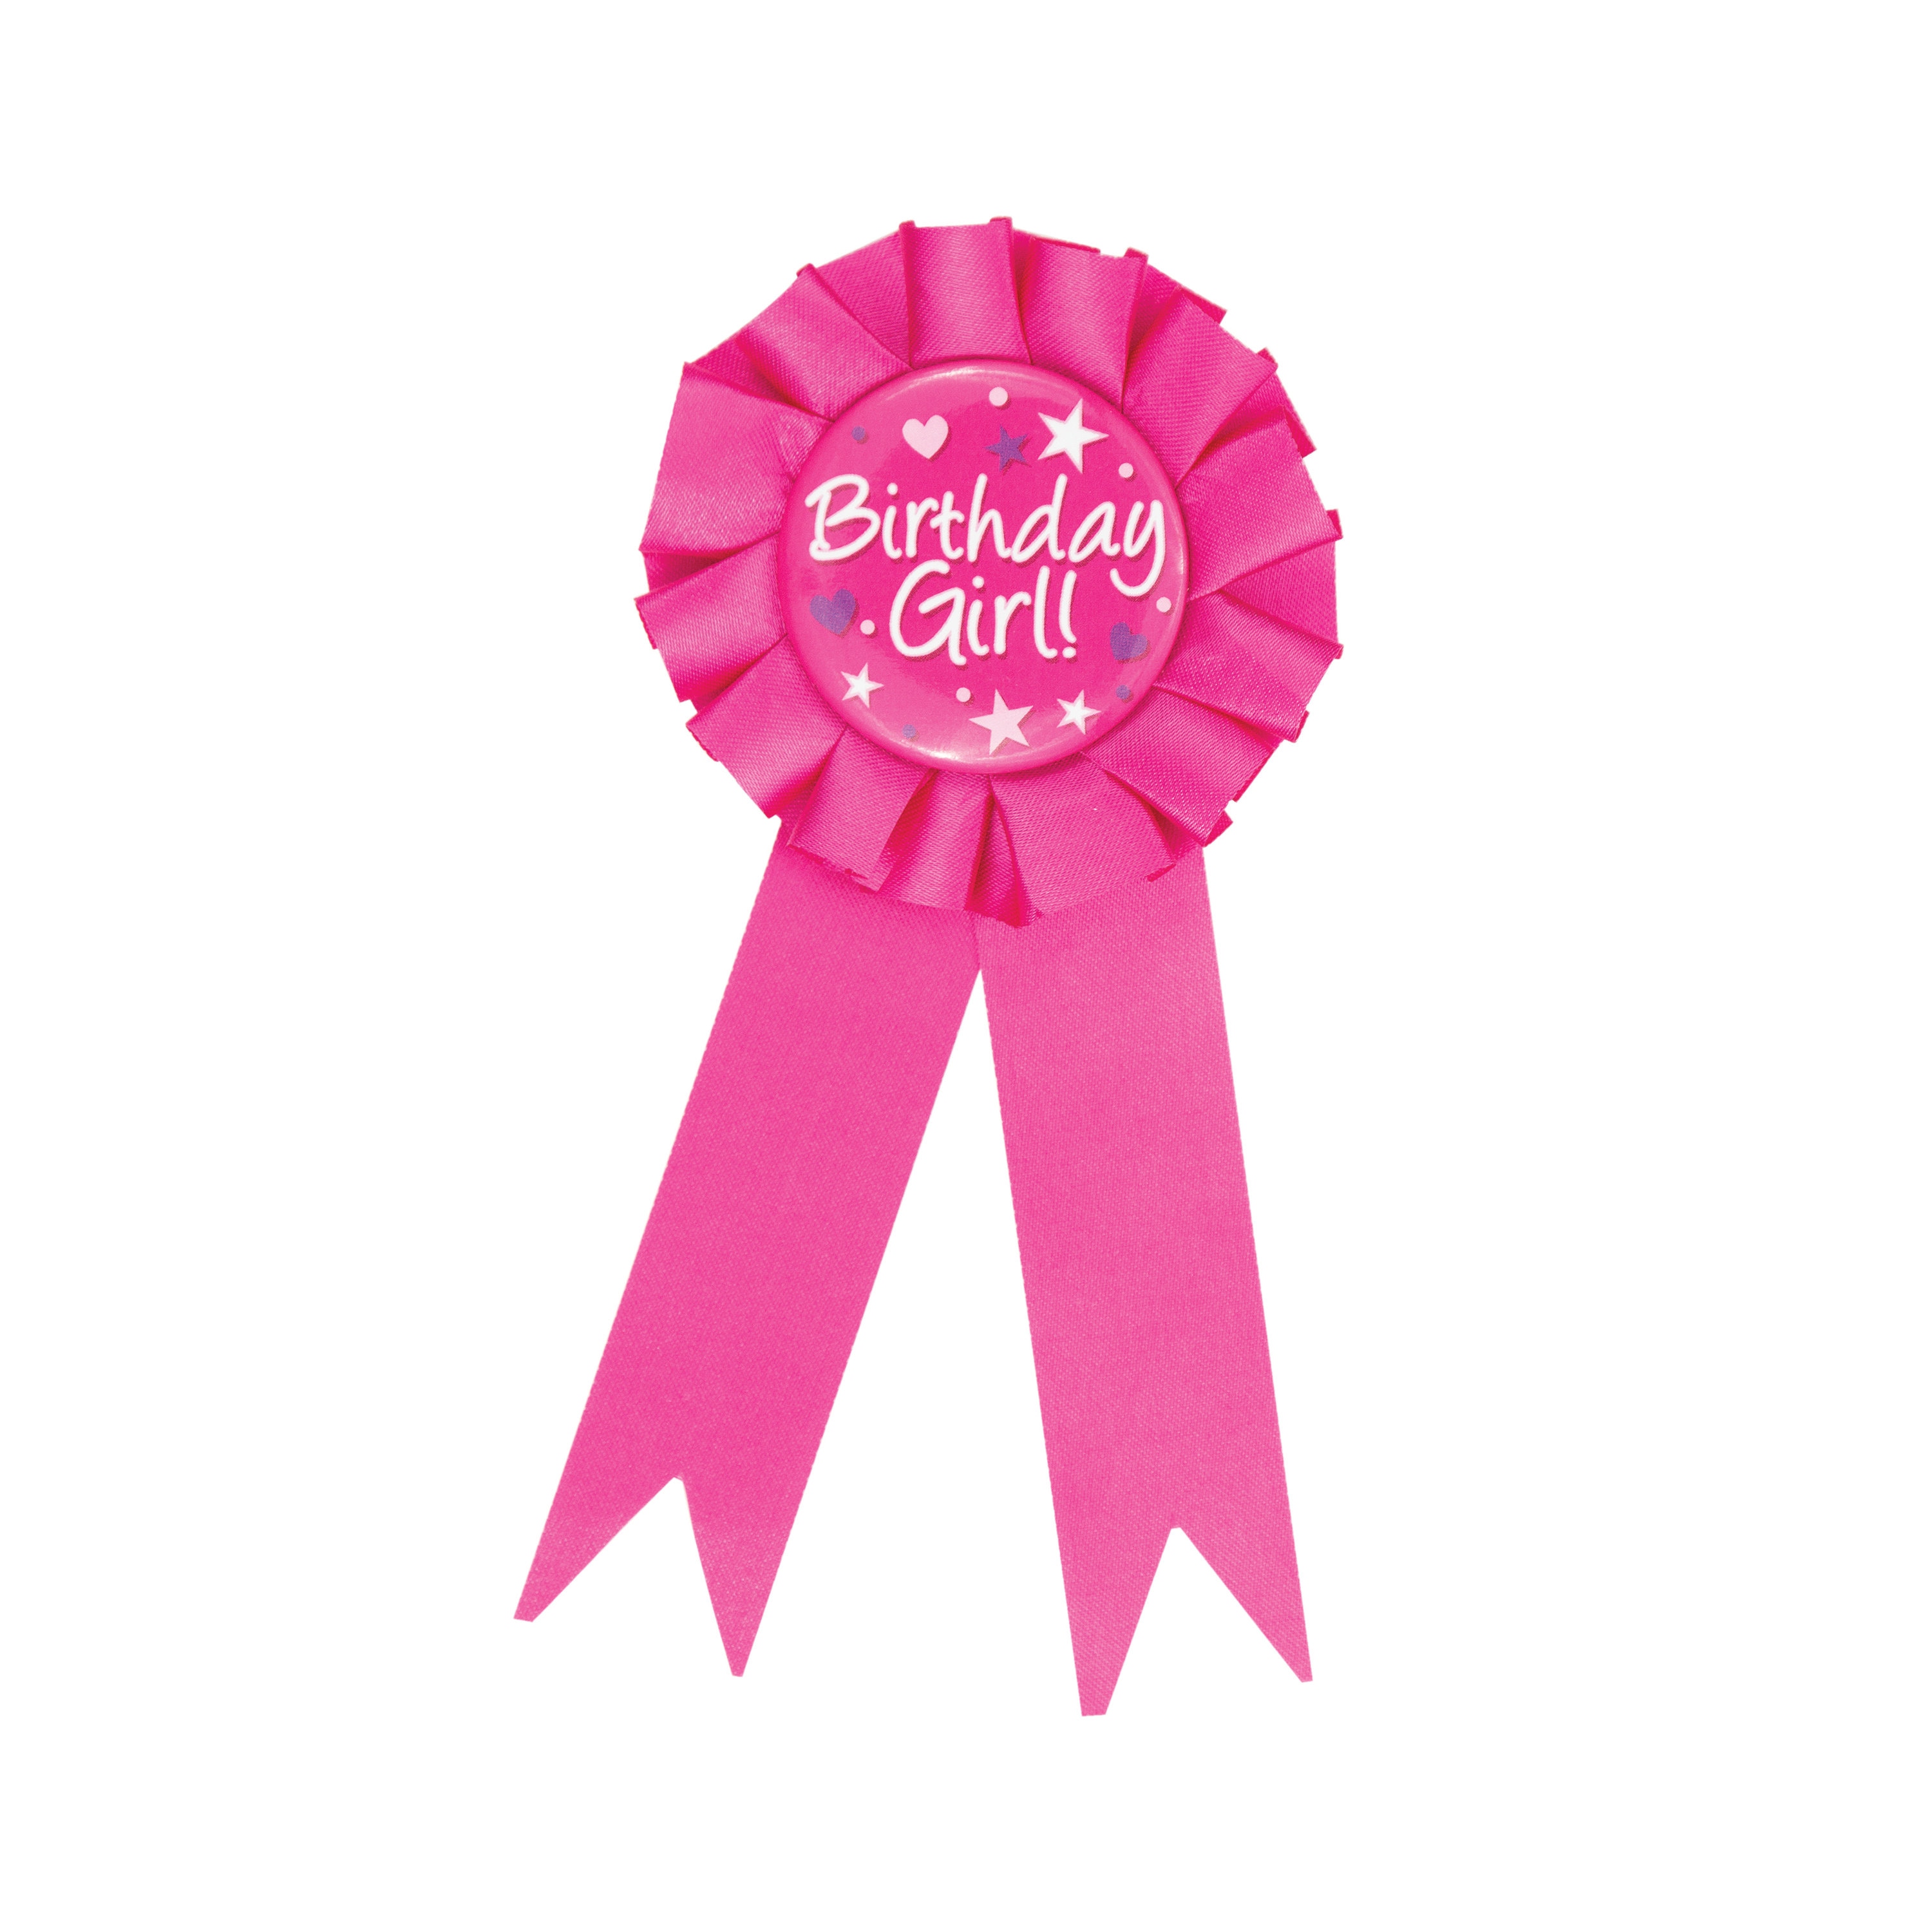 Birthday Girl Pink Ribbon, Special Day, Birthday Celebration